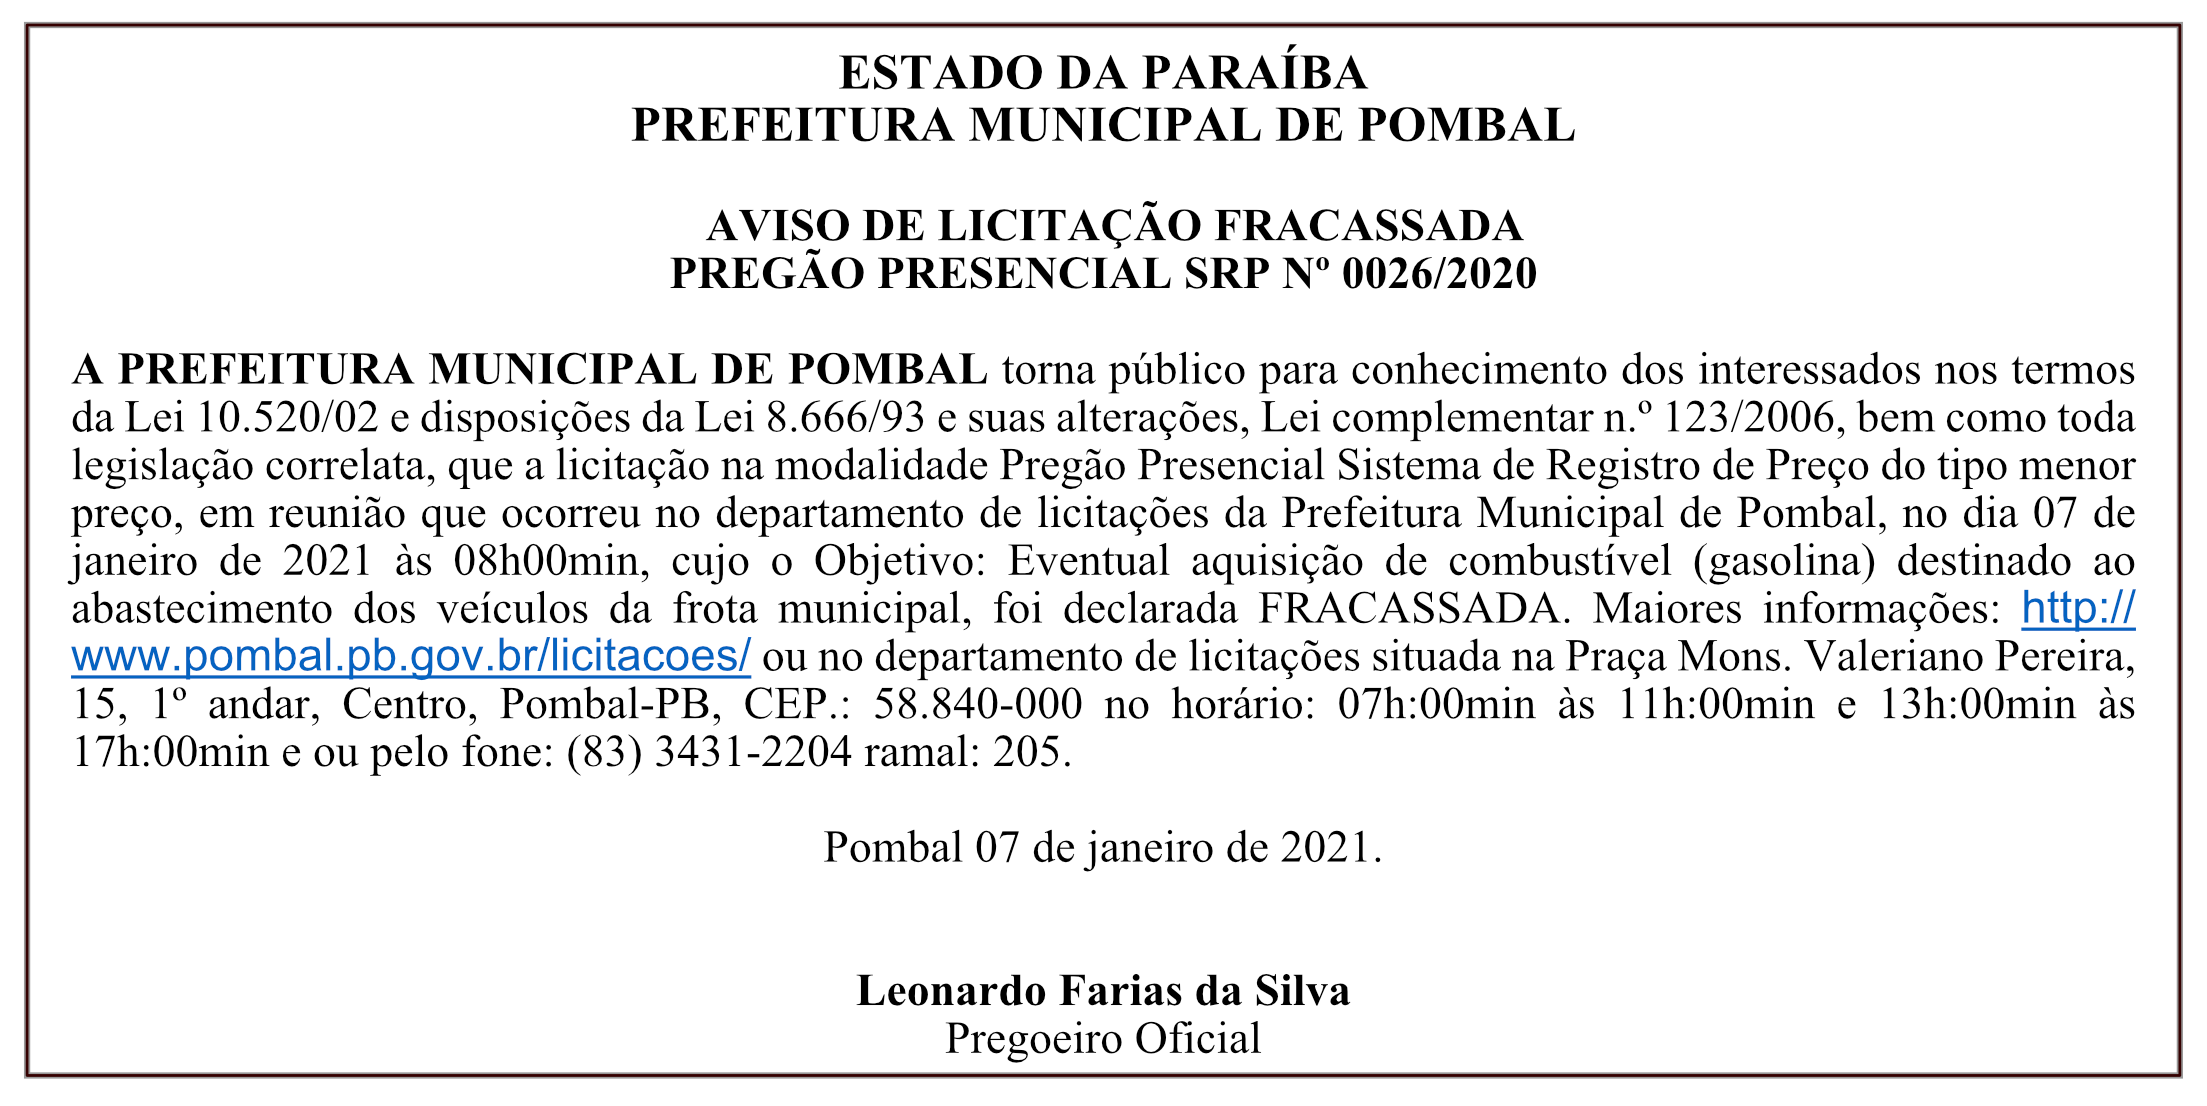 PREFEITURA MUNICIPAL DE POMBAL – AVISO DE LICITAÇÃO FRACASSADA – PREGÃO PRESENCIAL SRP Nº 0026/2020